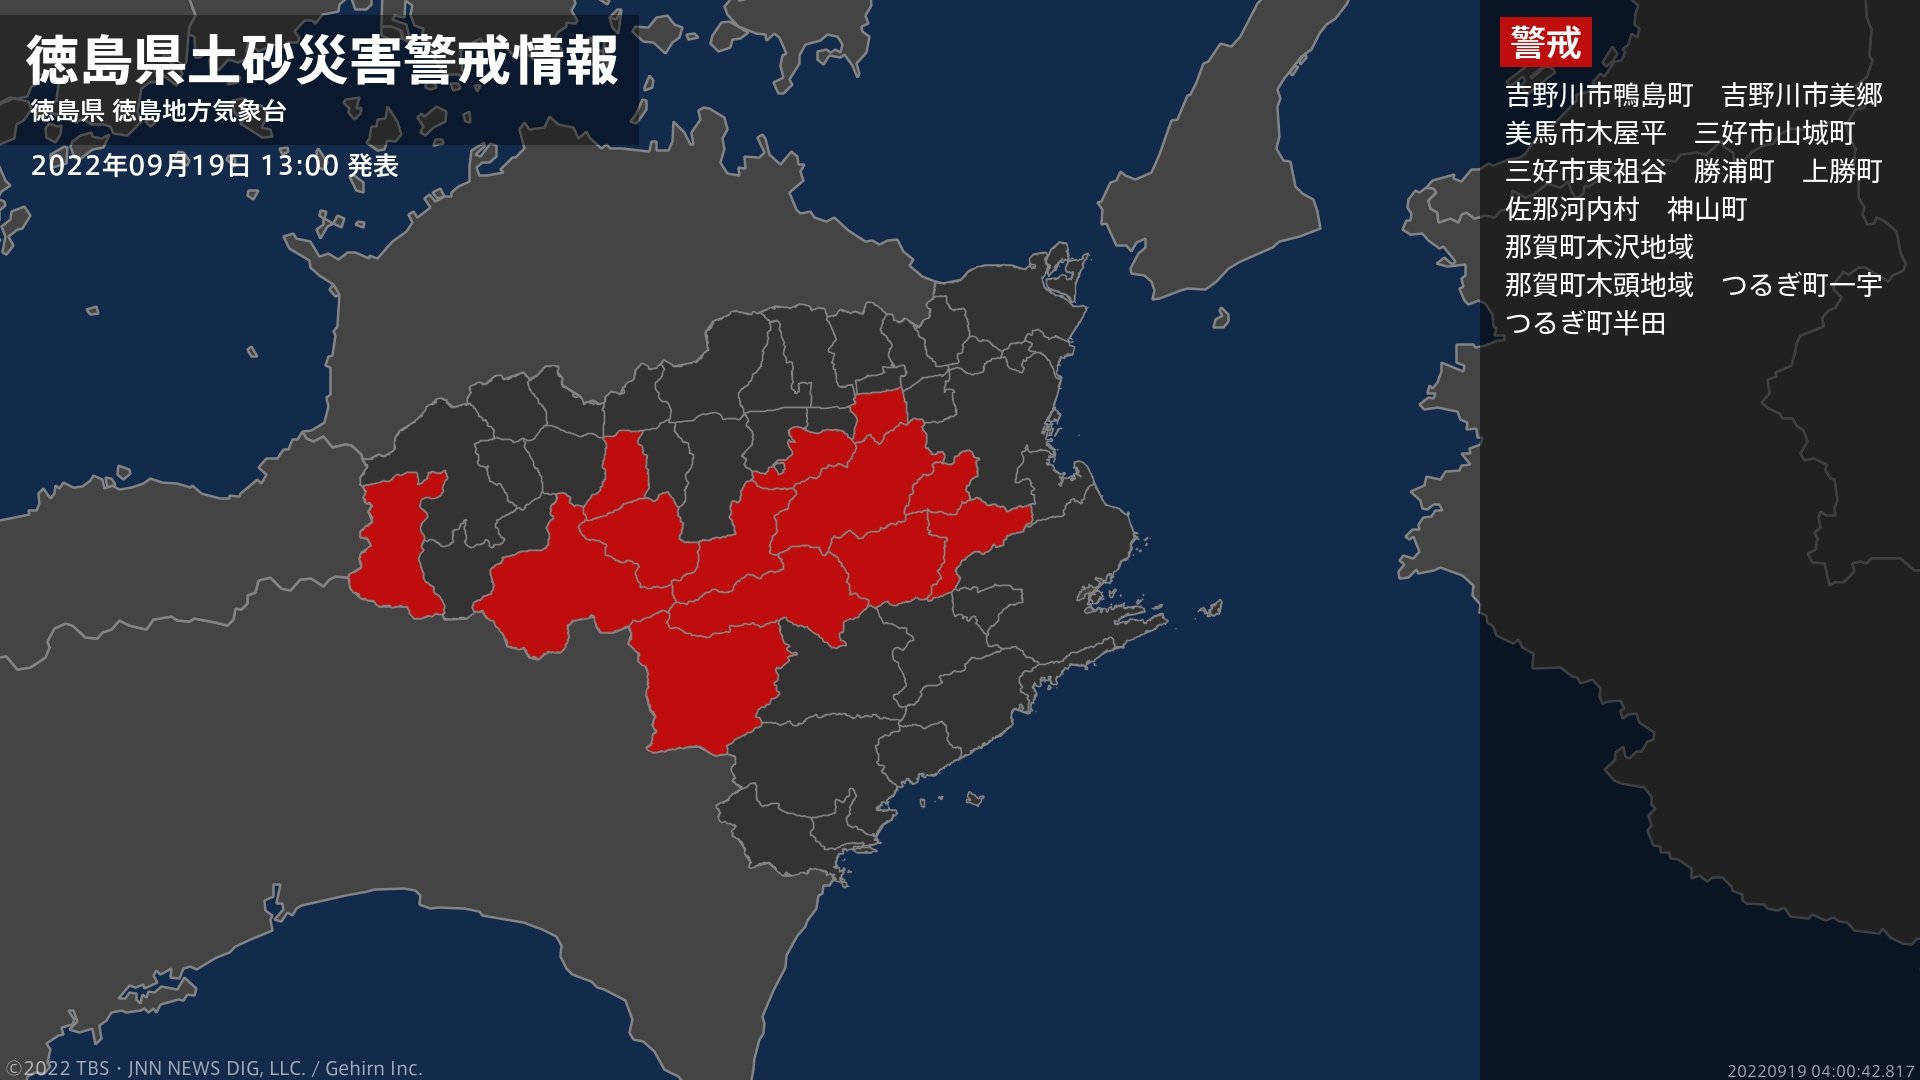 【土砂災害警戒情報】徳島県・那賀町木頭地域に発表